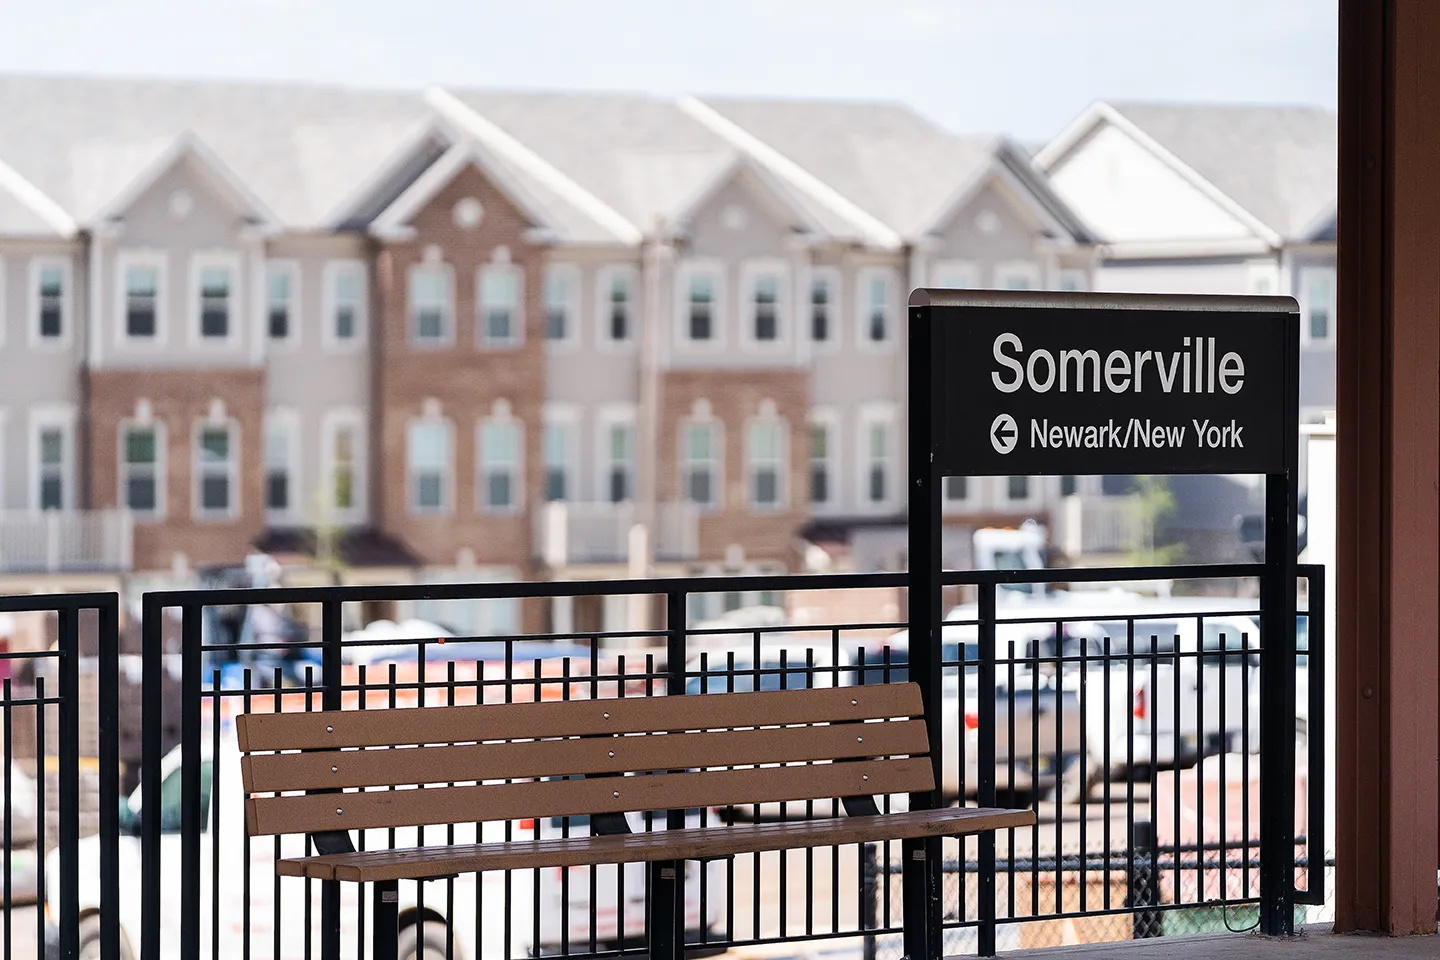 Somerville Station Transit-Oriented Development in Somerville, New Jersey.